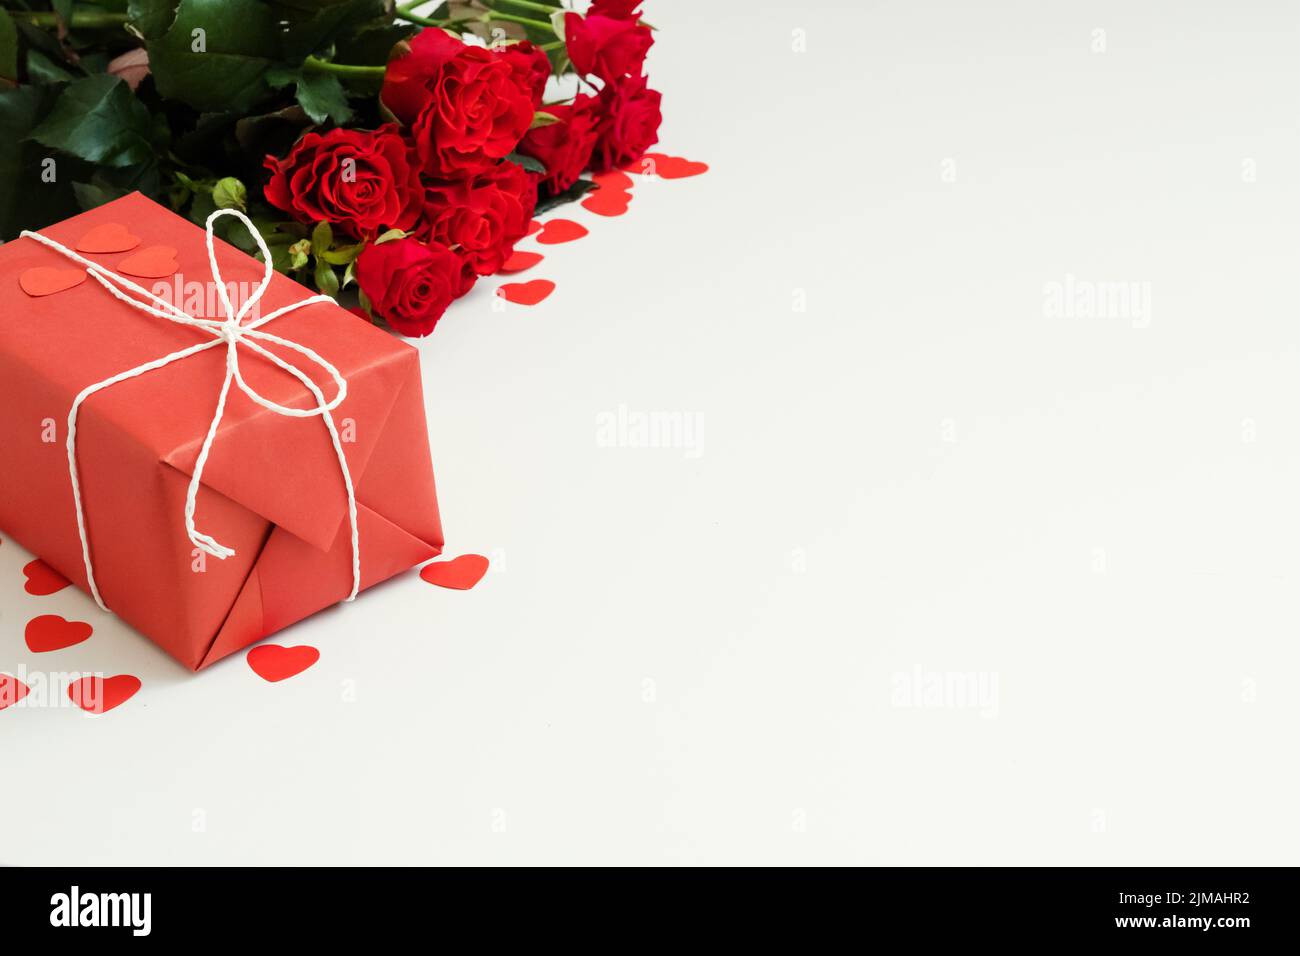 coffret cadeau surprise romantique roses rouges Banque D'Images